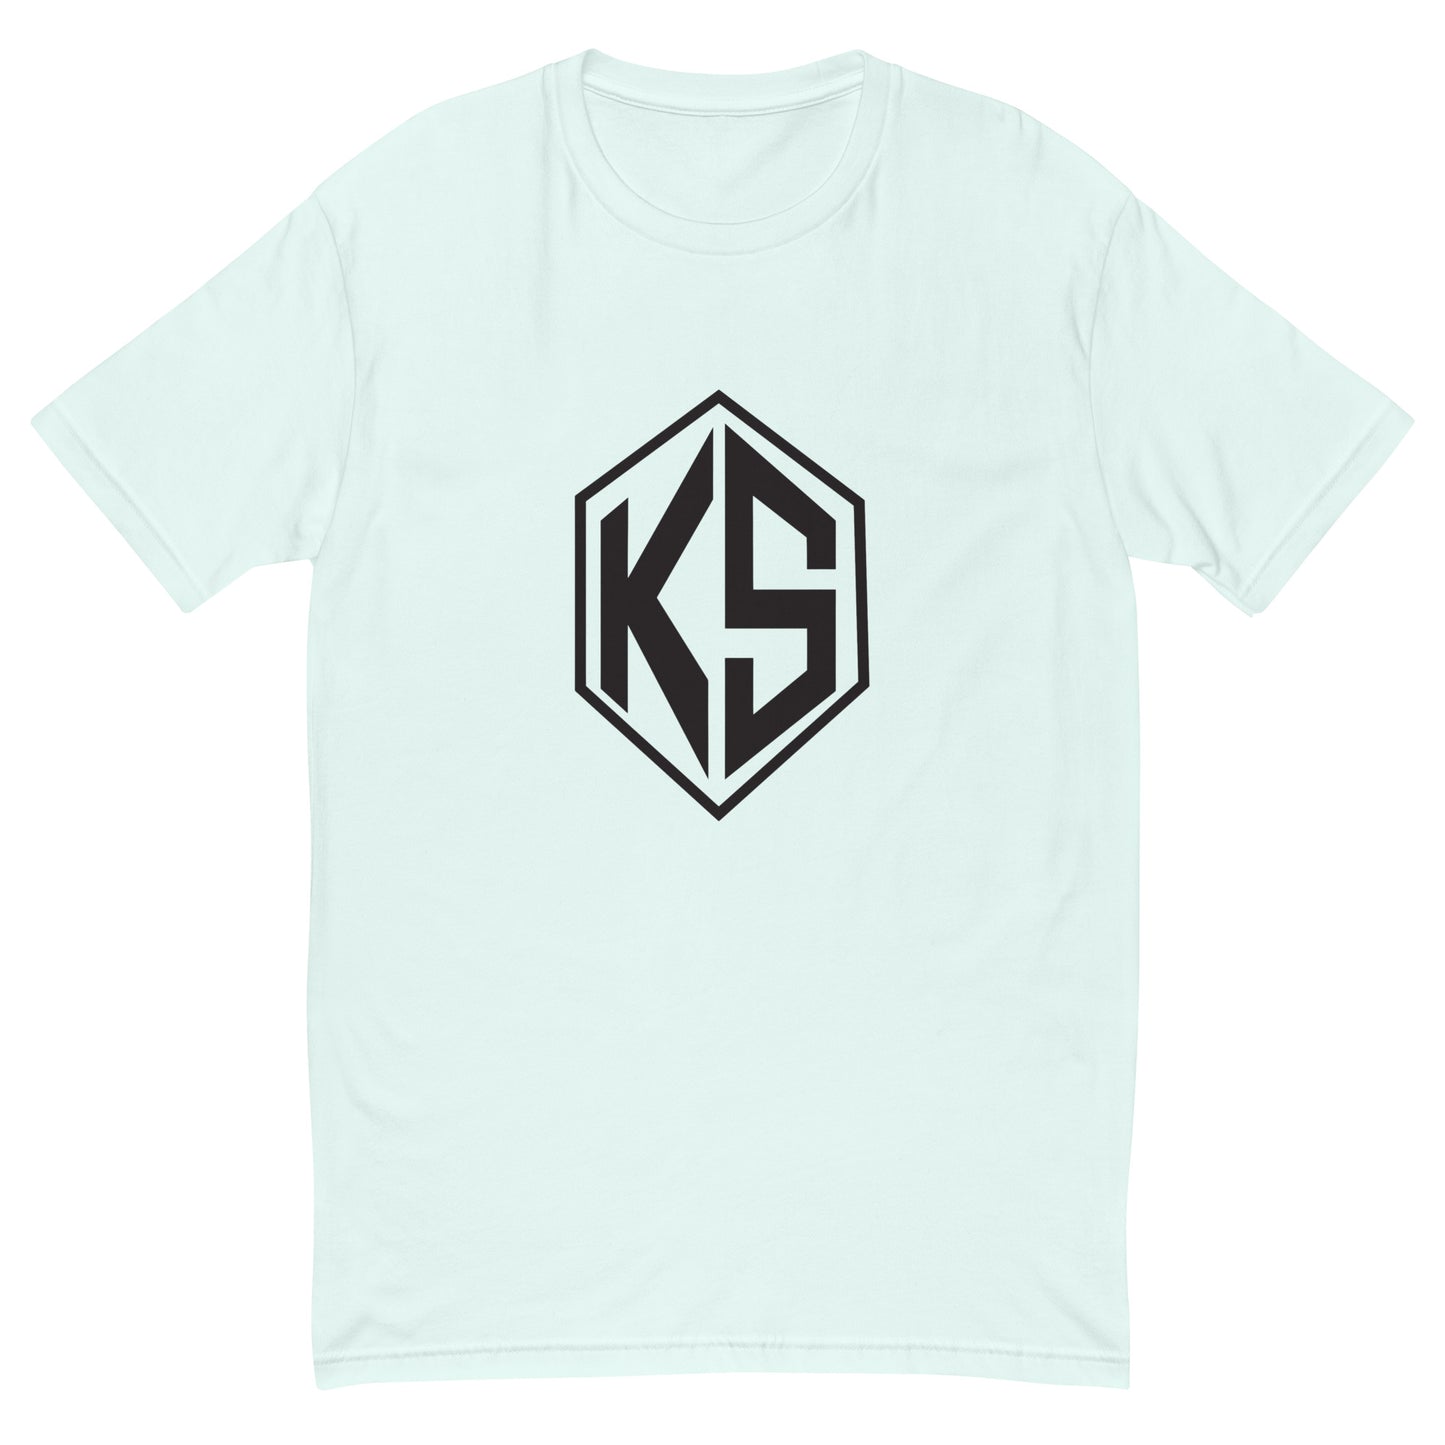 KS Short Sleeve T-shirt